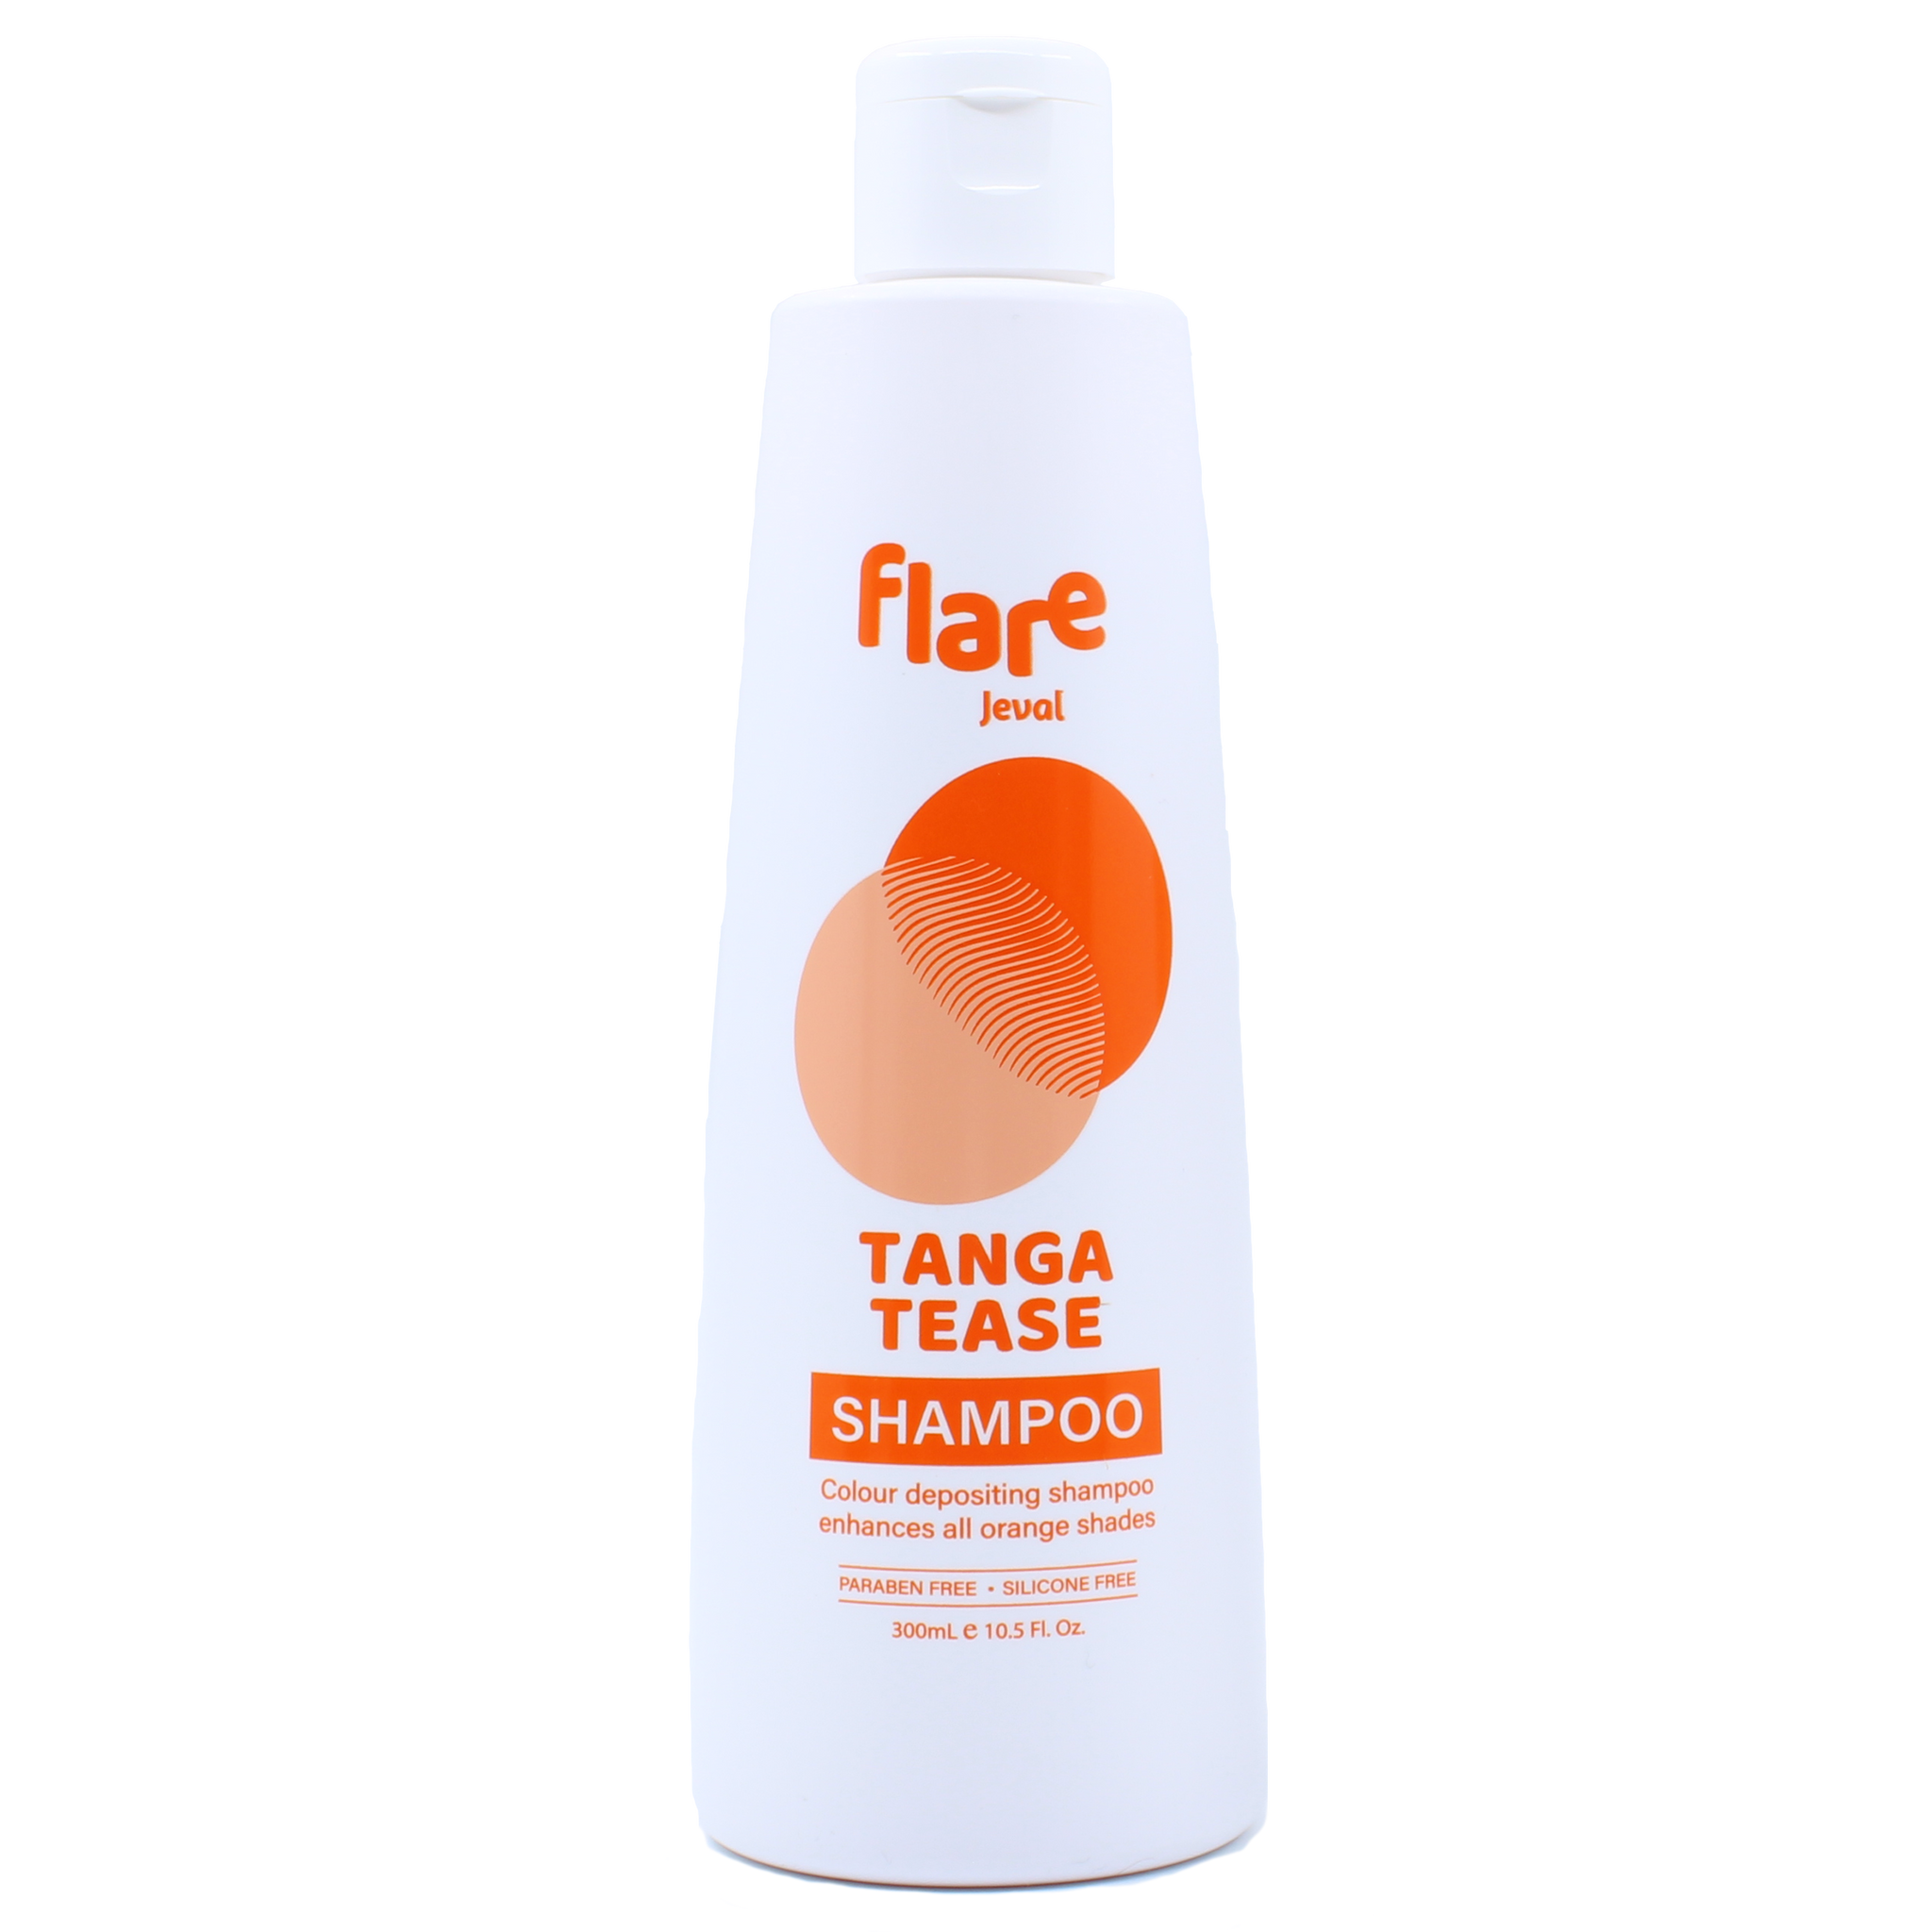 Jeval Flare Tanga Tease Shampoo 300ml